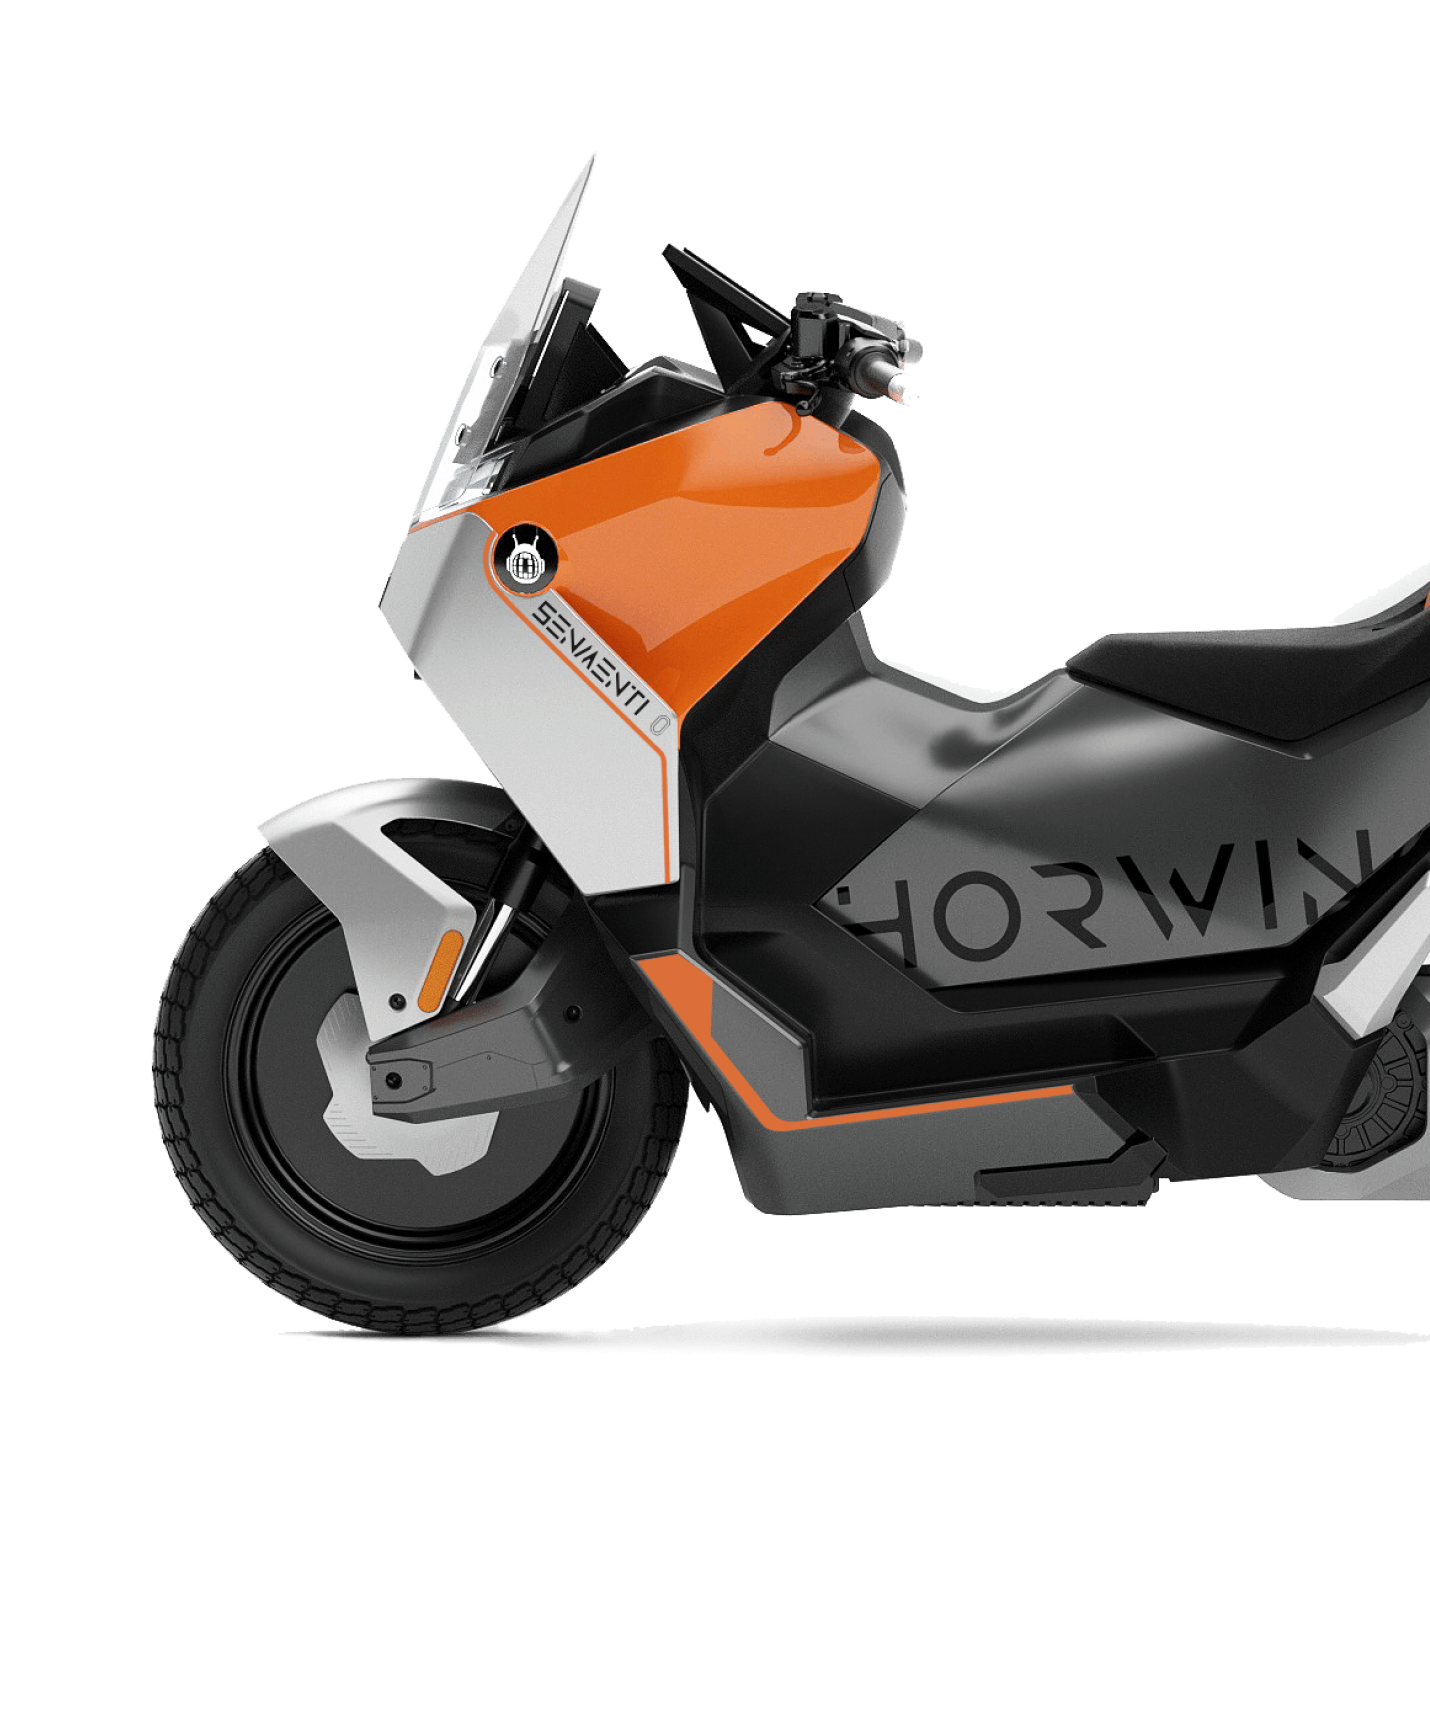 Devot Electric Motorcycle Debuts - 200 Km Range, 120 Kmph Top Speed